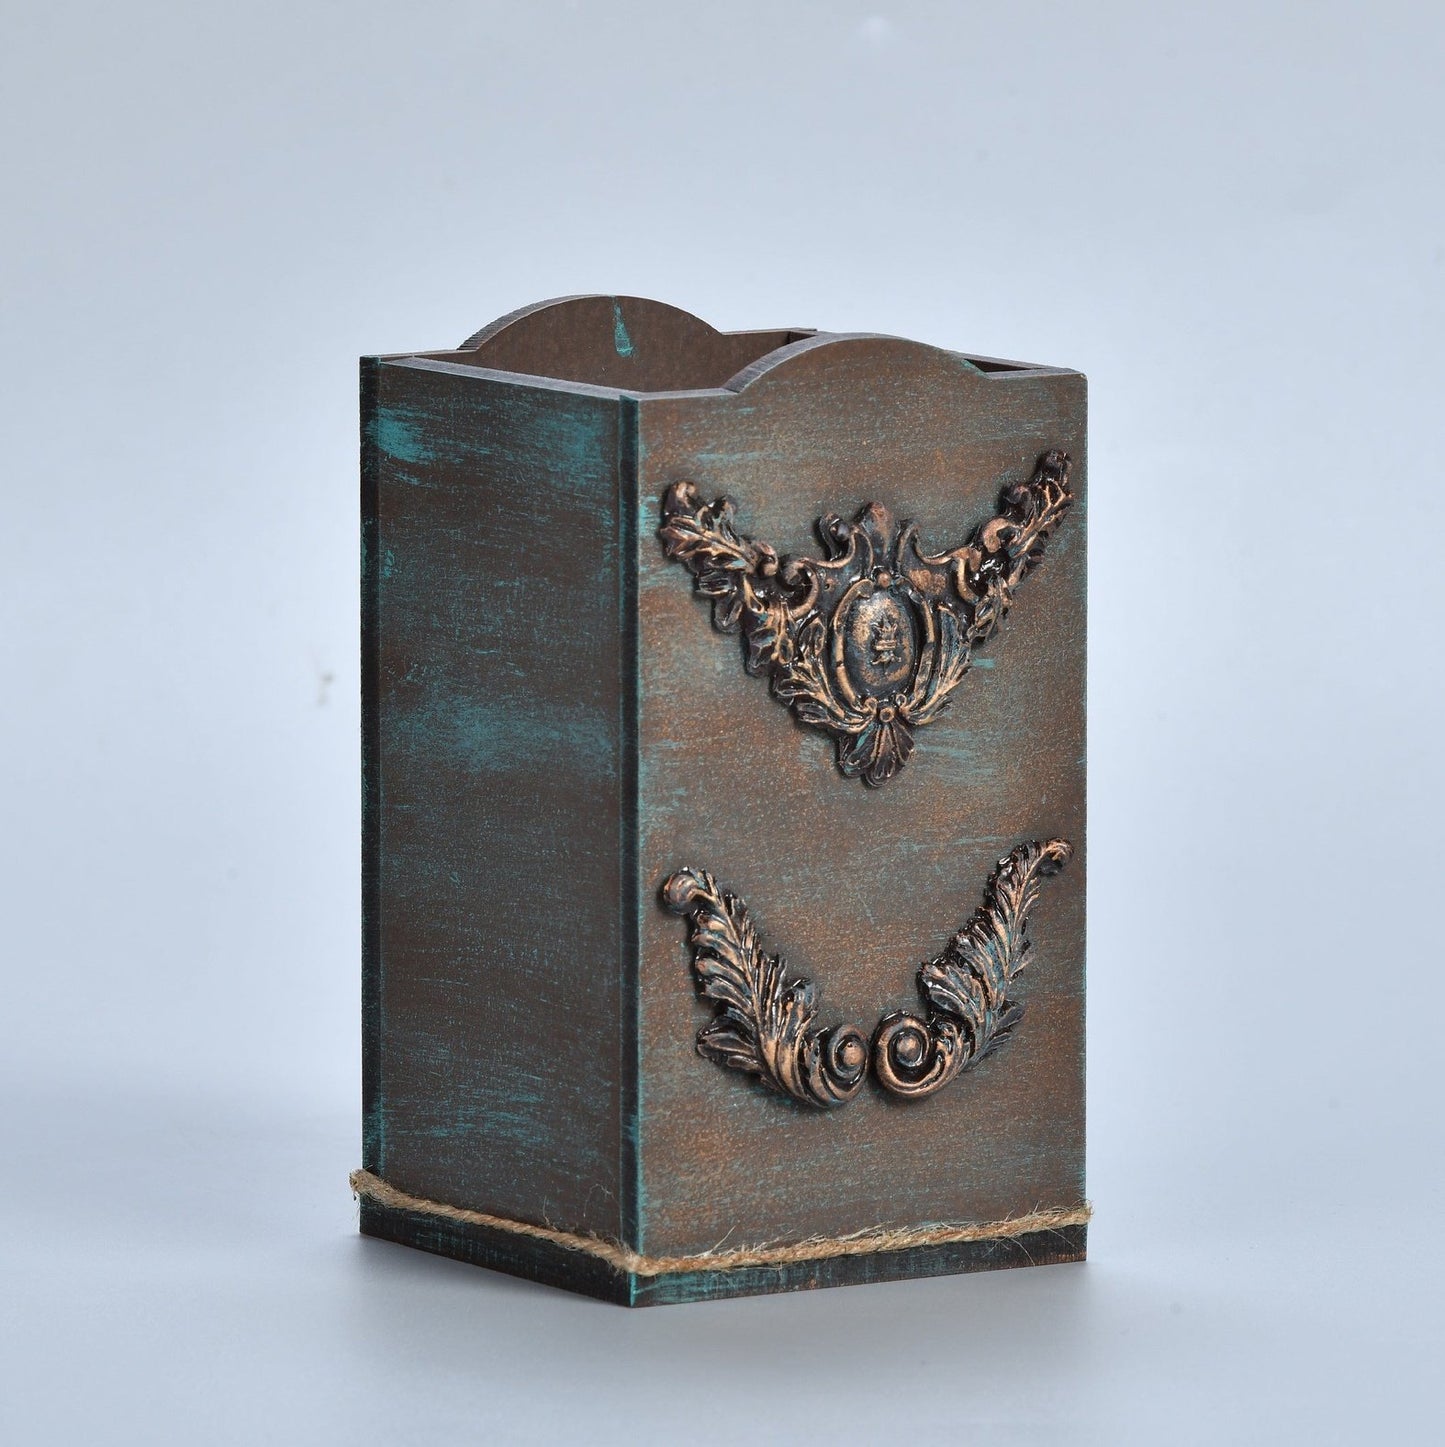 Multipurpose Wooden Rustic Vintage Designer Holder Stand